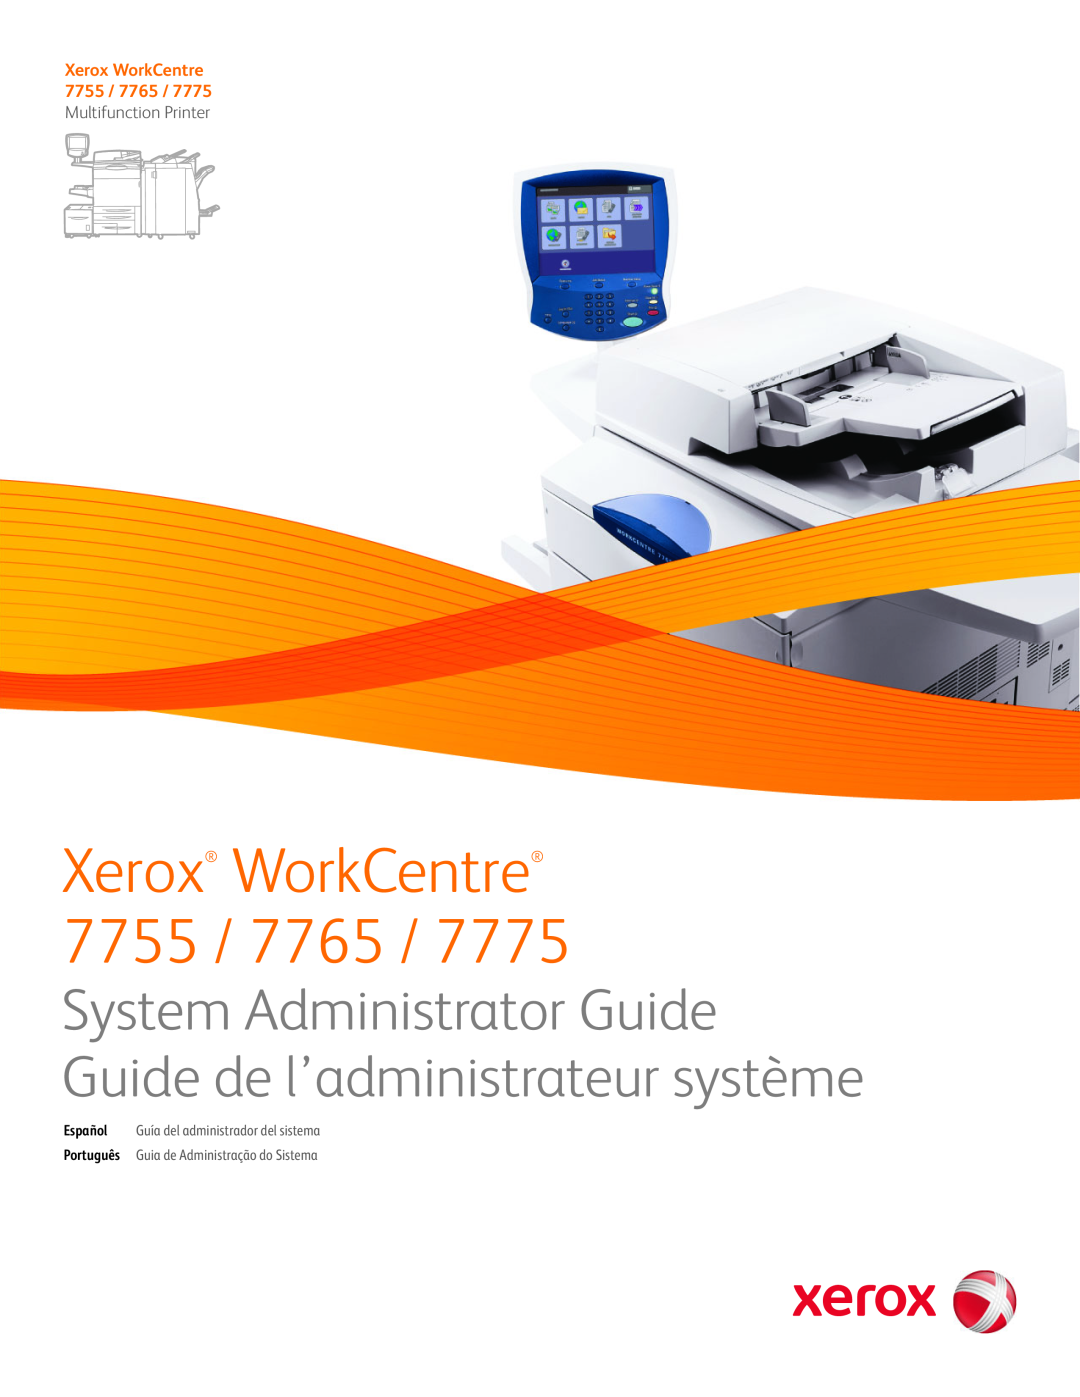 Xerox 7775 manual Xerox WorkCentre 7755 / 7765, Multifunction Printer, Español Guía del administrador del sistema 